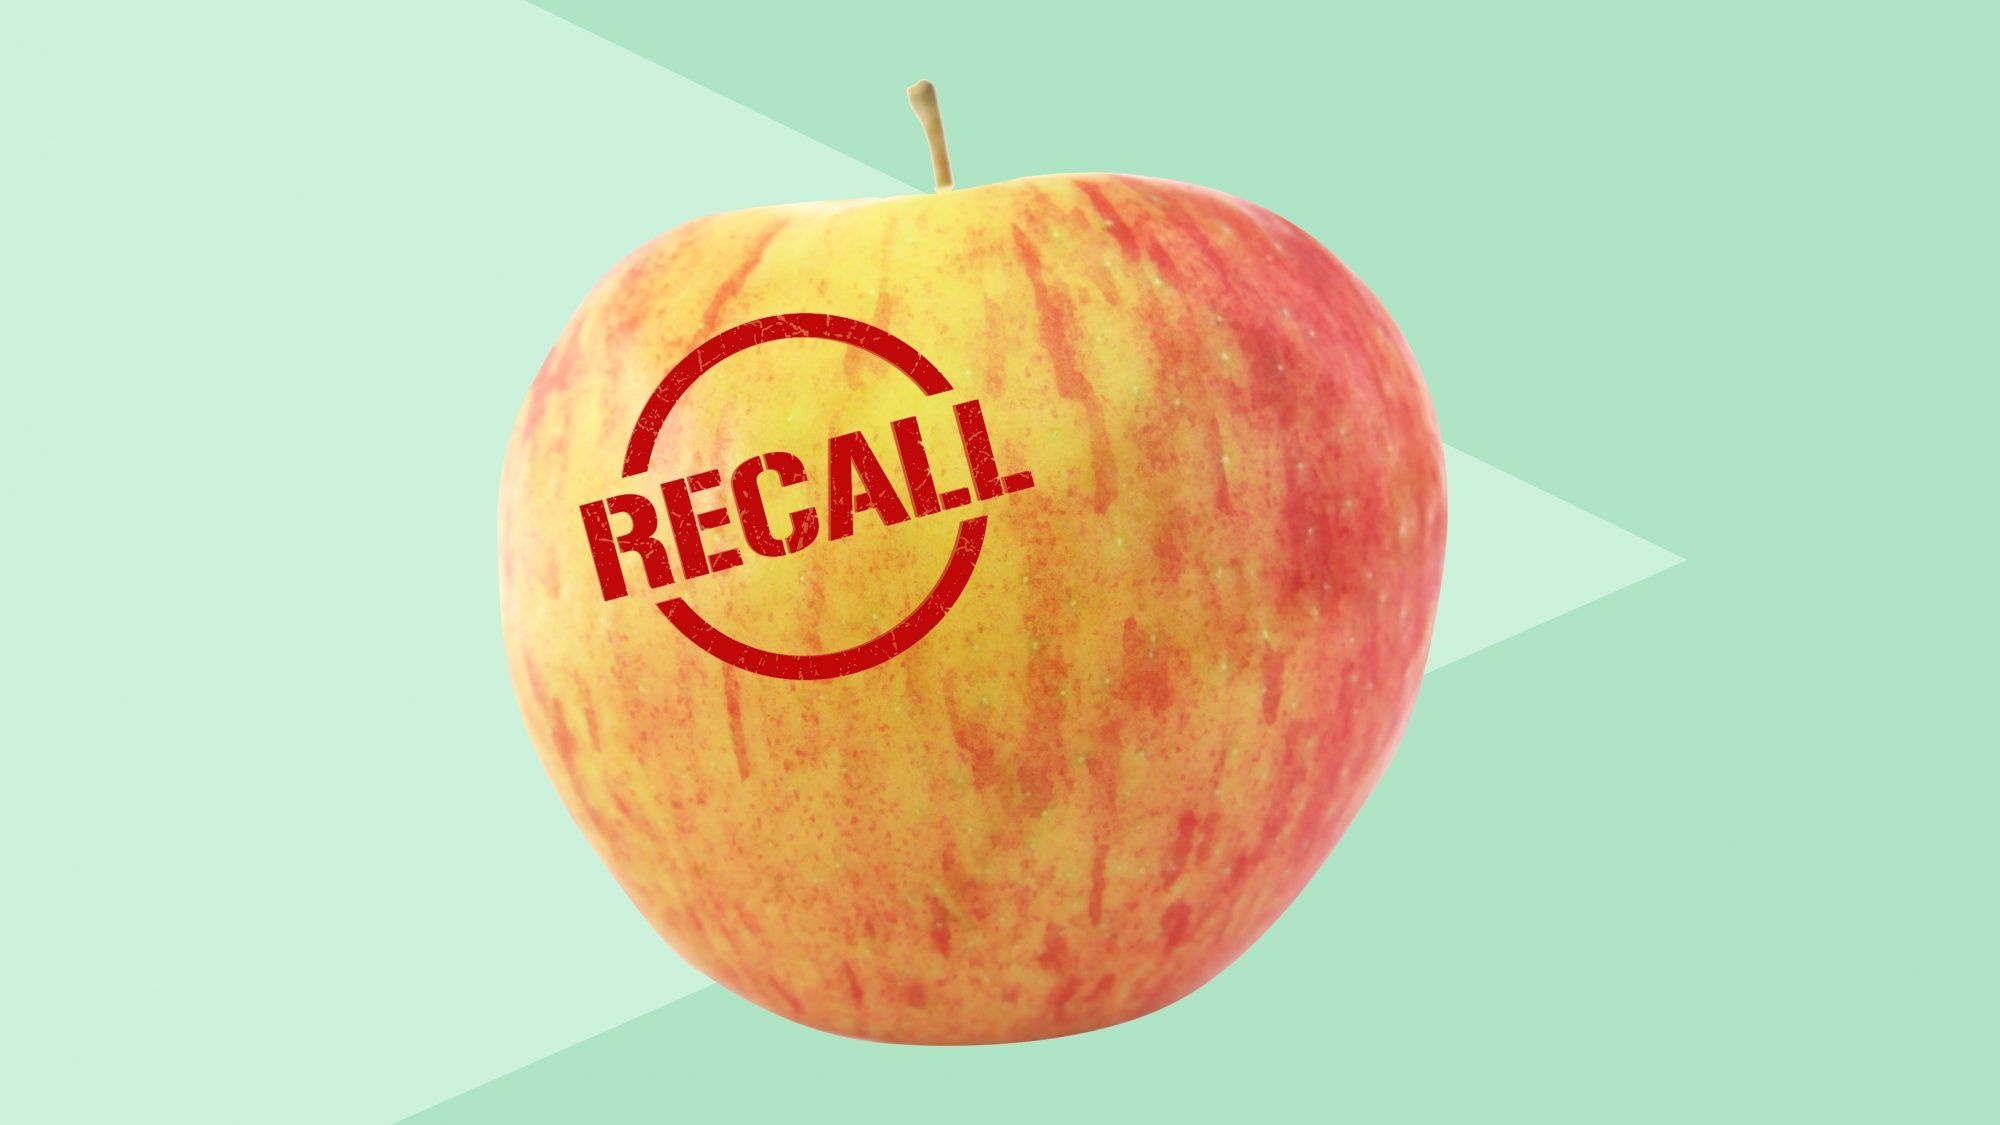 6 beliebte Apfelsorten werden wegen einer möglichen Kontamination mit Listerien zurückgerufen – das sollten Sie wissen